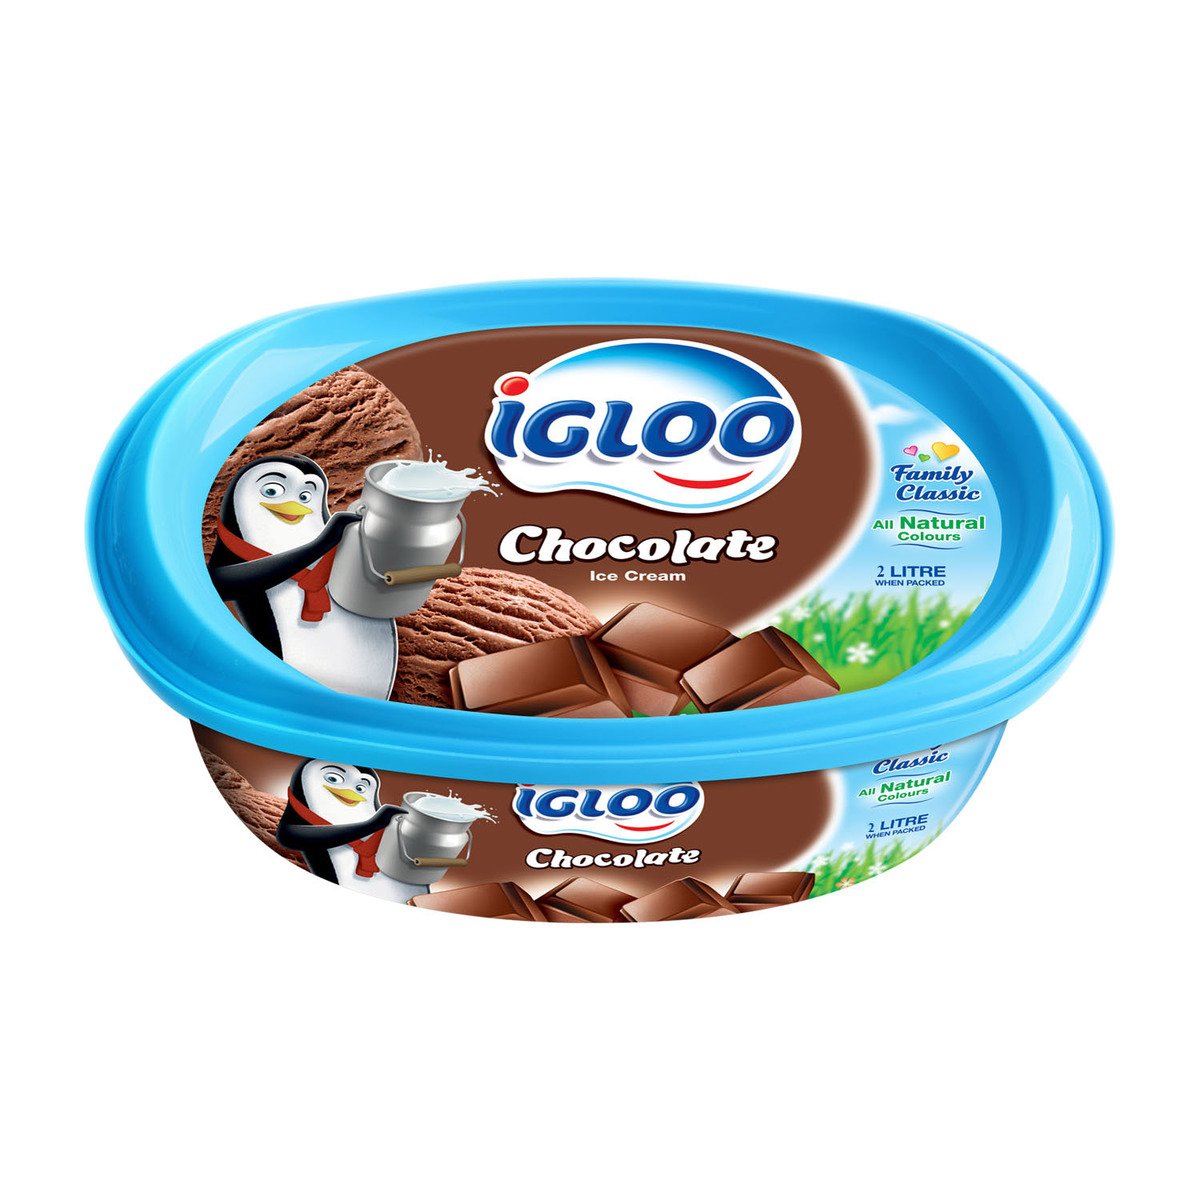 اشتري قم بشراء آيس كريم شوكولاتة إيجلو 2 لتر Online at Best Price من الموقع - من لولو هايبر ماركت Ice Cream Take Home في السعودية